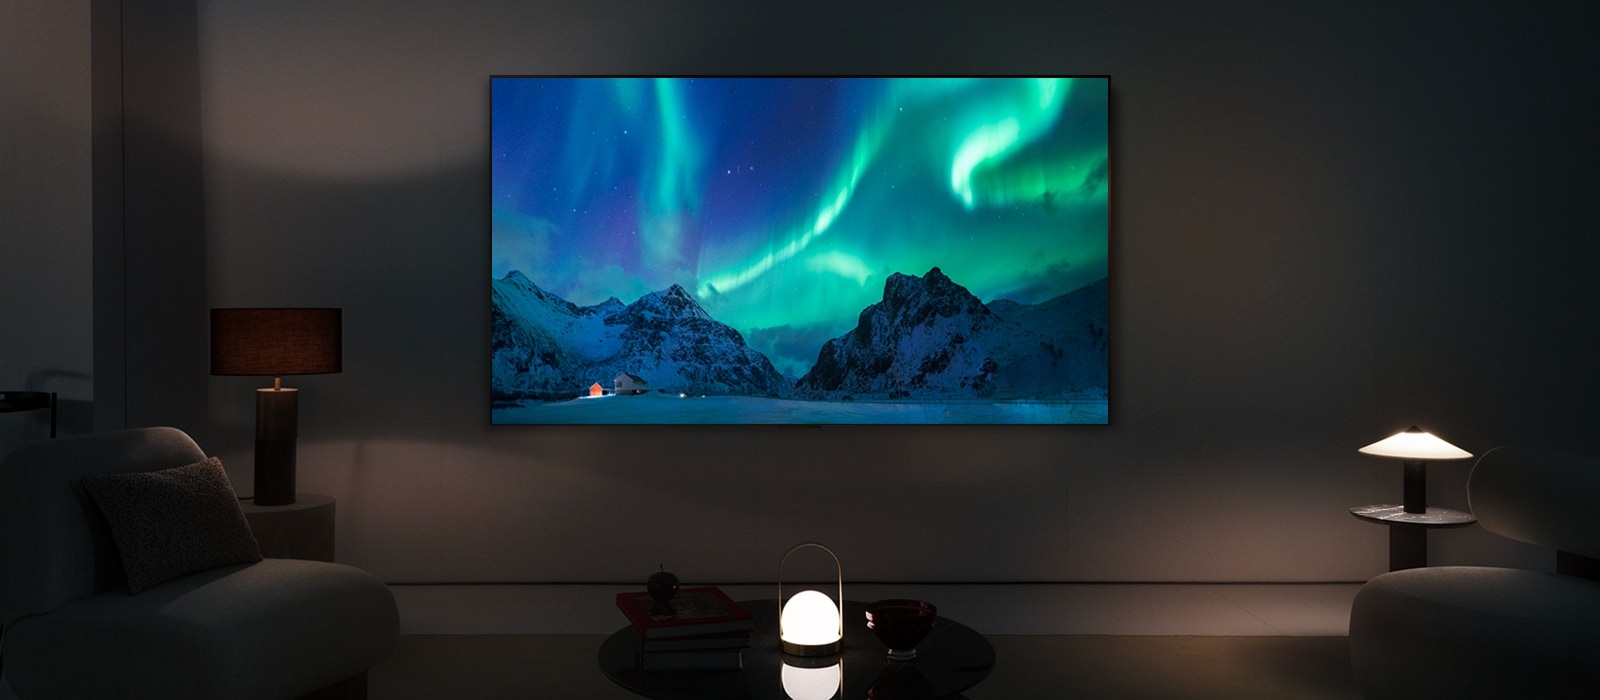 LG OLED TV и LG Soundbar в съвременен дом през нощта. На екрана се показва изображението на полярното сияние с идеалното ниво на яркост.